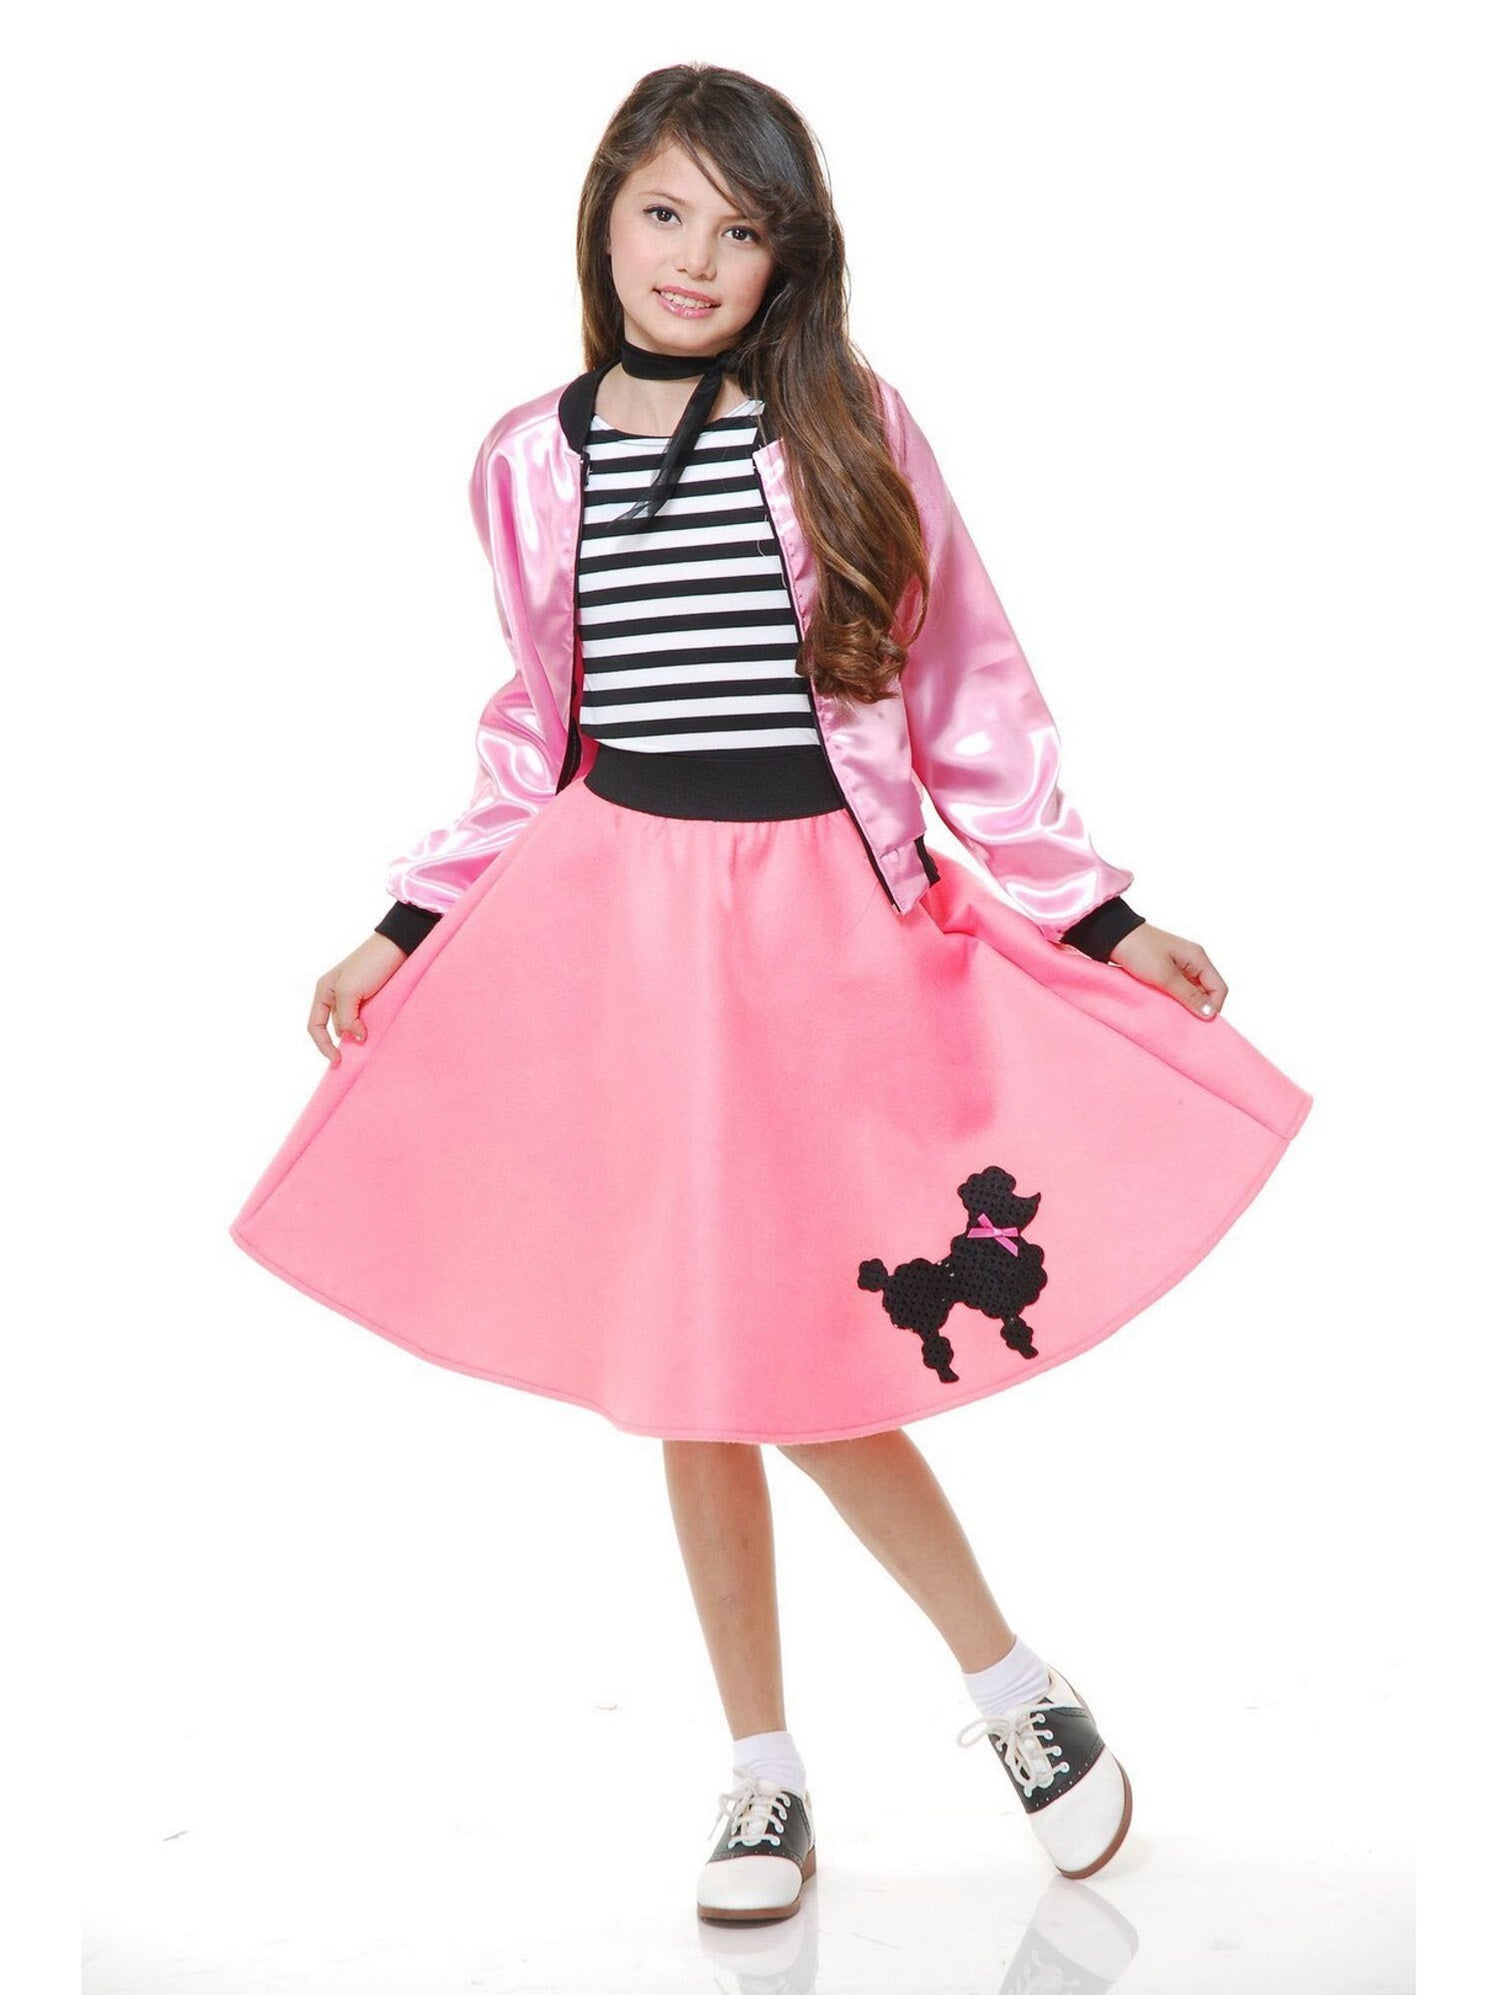 Girls Poodle Dress With Scarf & Belt — Costume Super Center